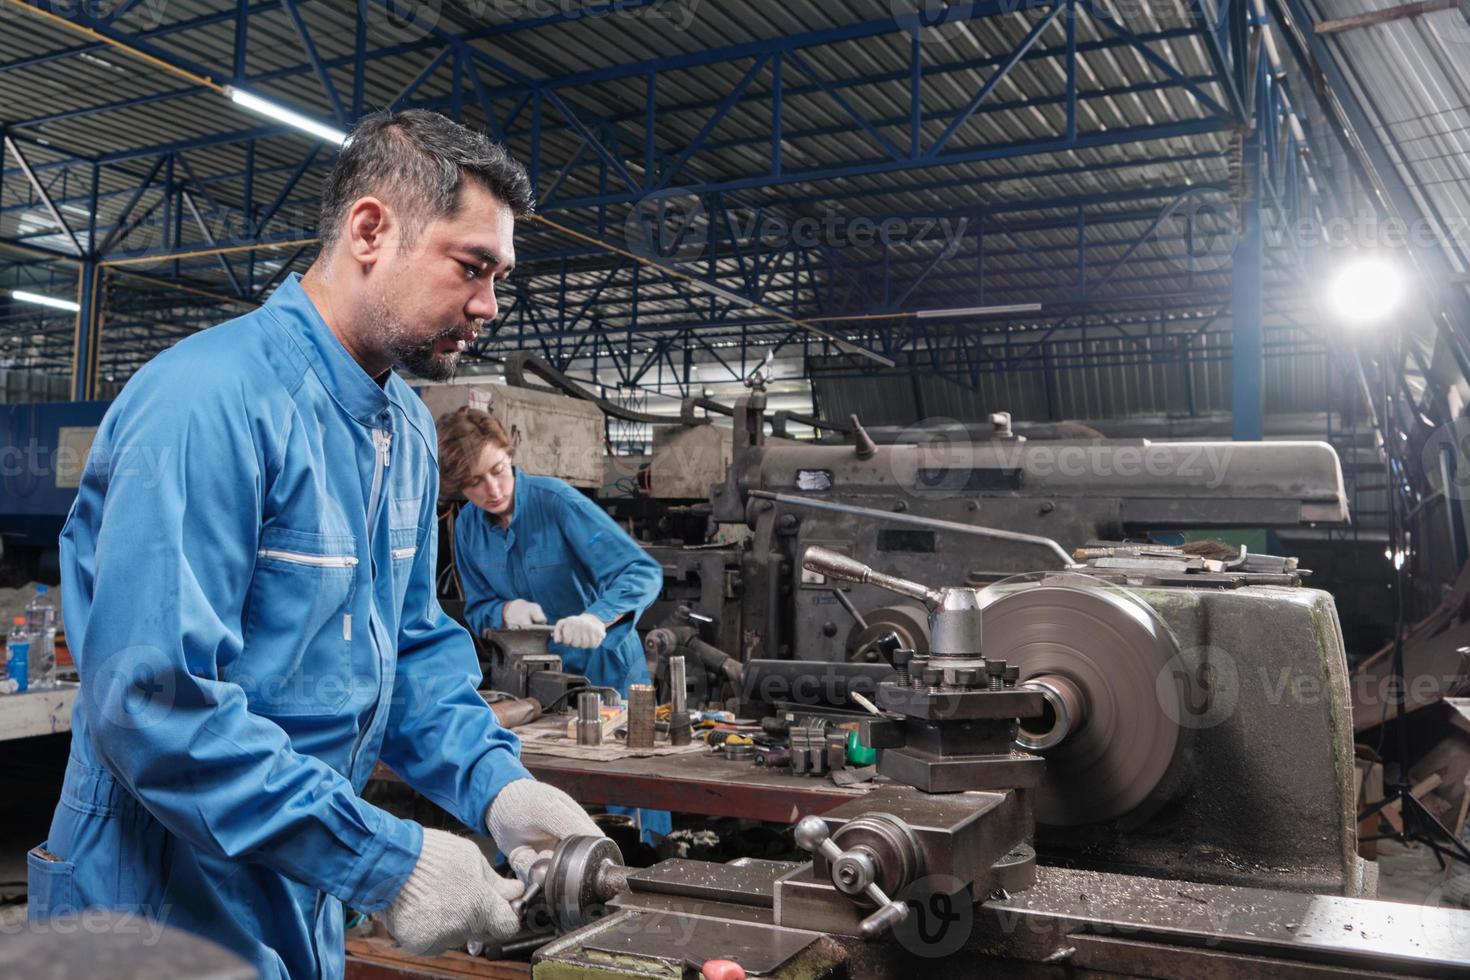 El equipo profesional de la industria, dos trabajadores con uniformes de seguridad y un socio de ingenieros trabajaron con herramientas de metalurgia, tornos mecánicos y talleres de repuestos en la fábrica de fabricación de acero. foto